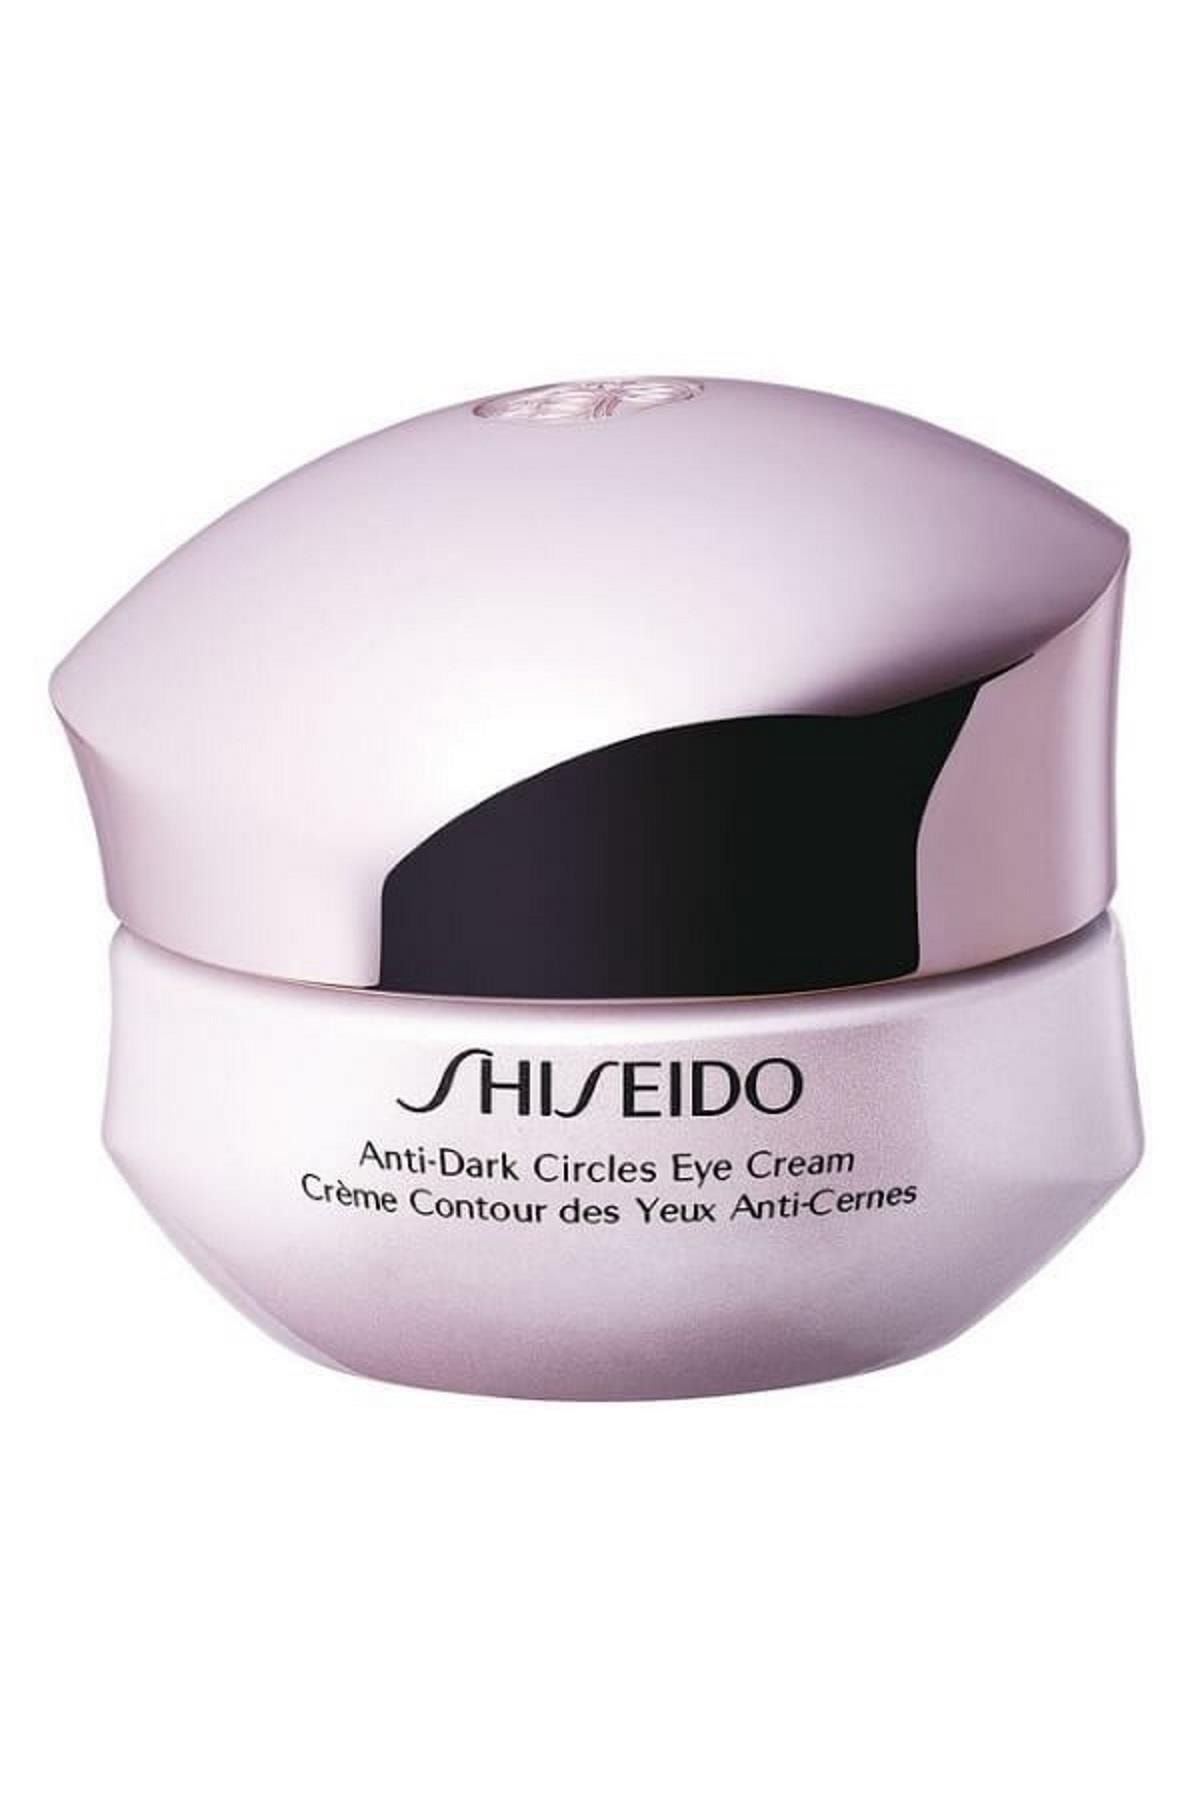 Шисейдо крем. Shiseido Anti-Dark circles Eye Cream Creme Contour des yeux. Shiseido крем вокруг глаз купить. Крем shiseido отзывы